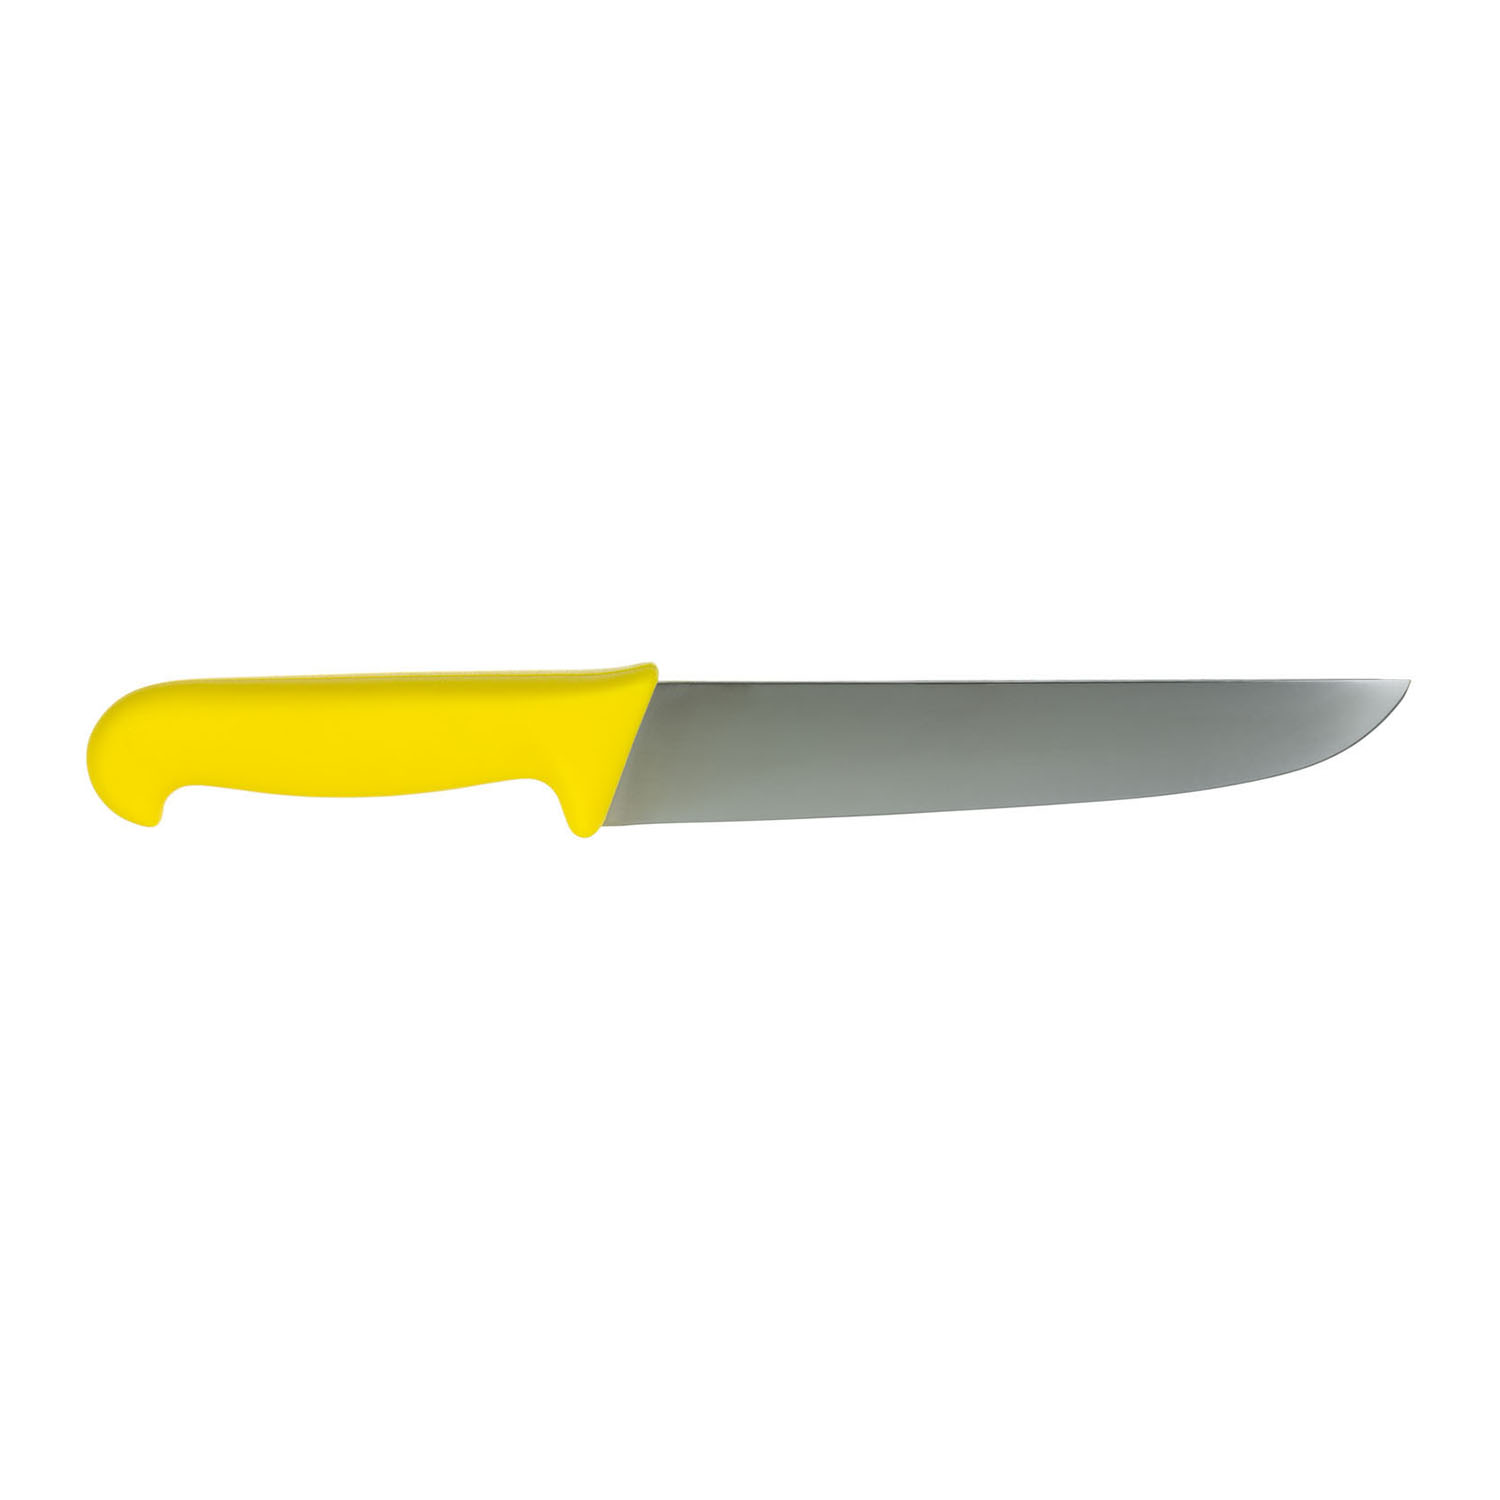 Butcher knive 24 cm